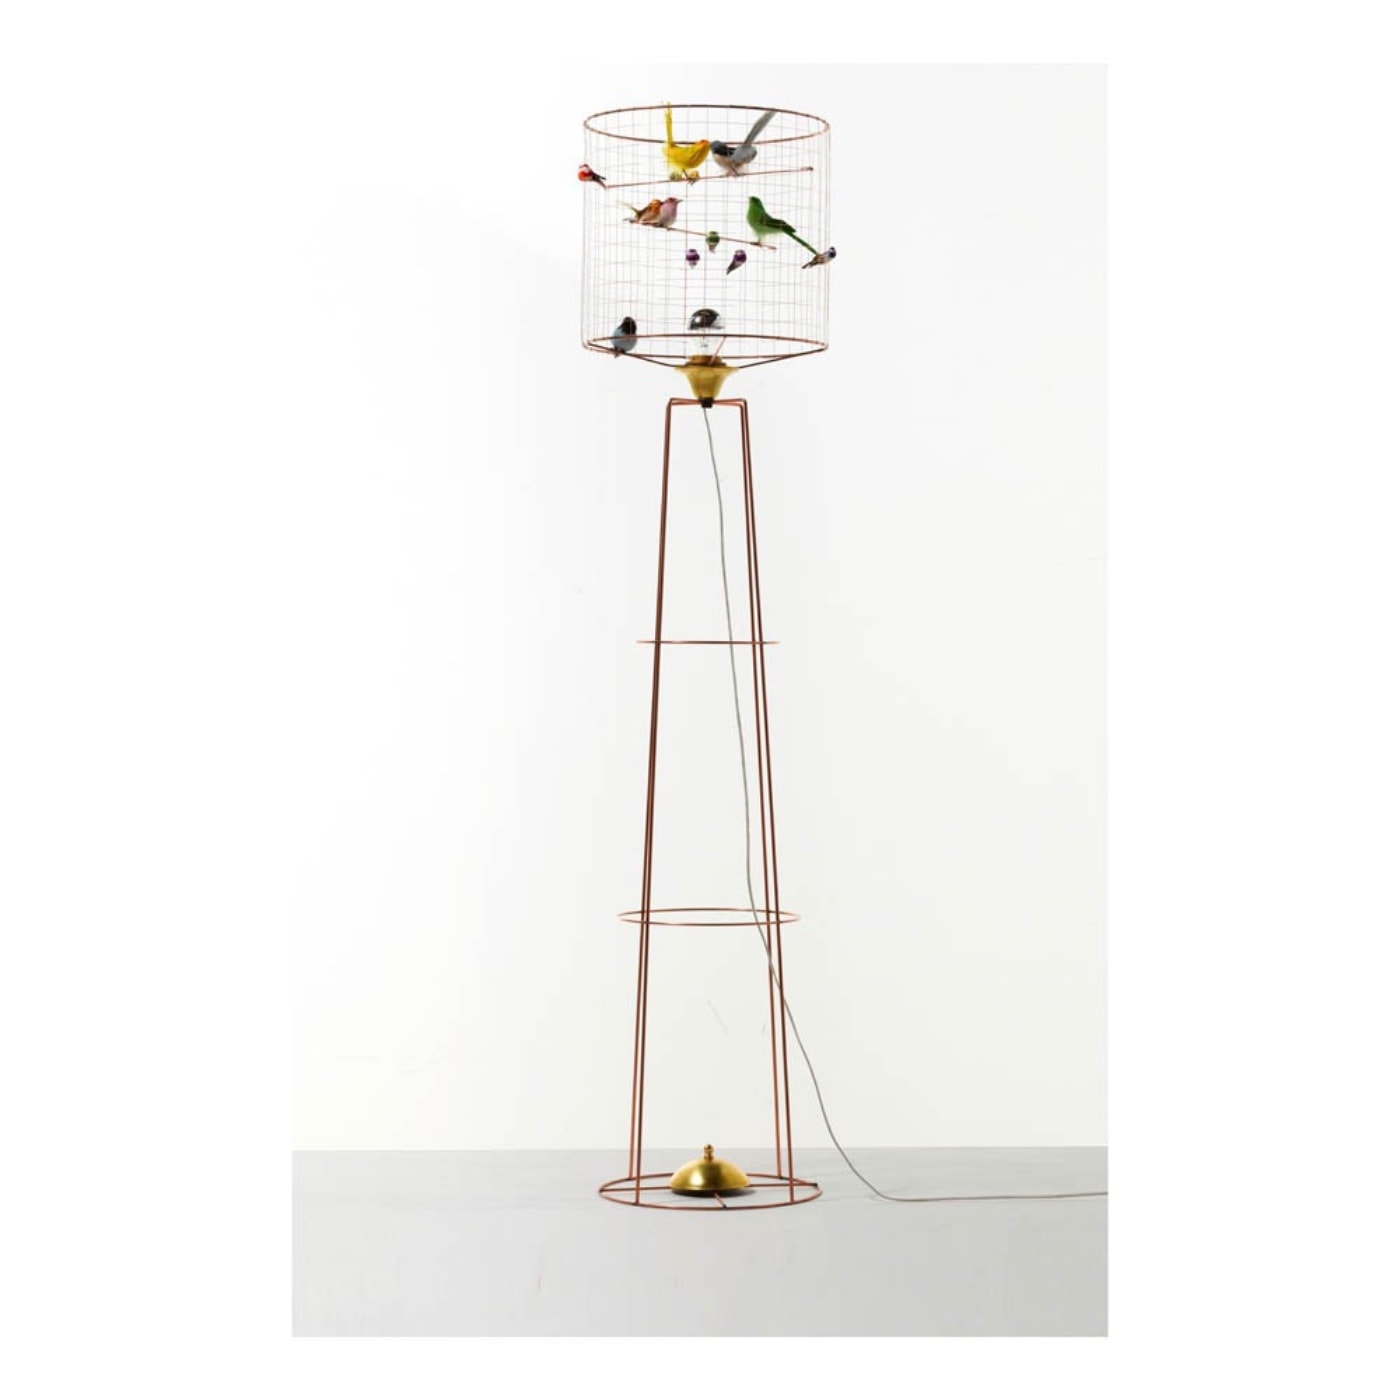 Vogelkäfiglampe von Challières – Designobjekt // HIMBEER